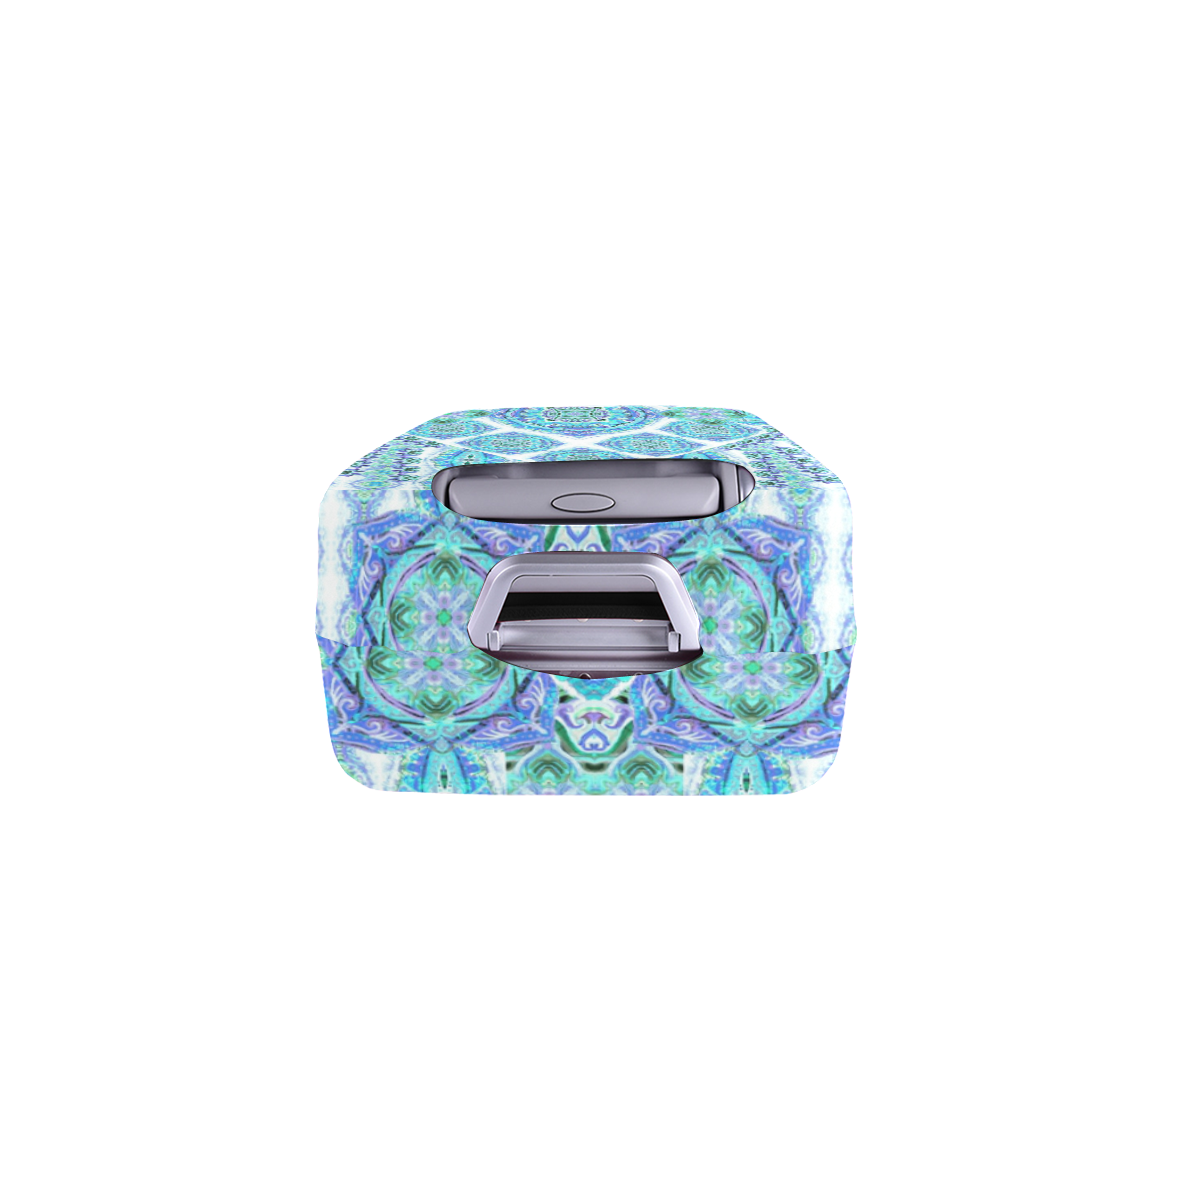 mandala spirit turquoise Luggage Cover/Small 18"-21"